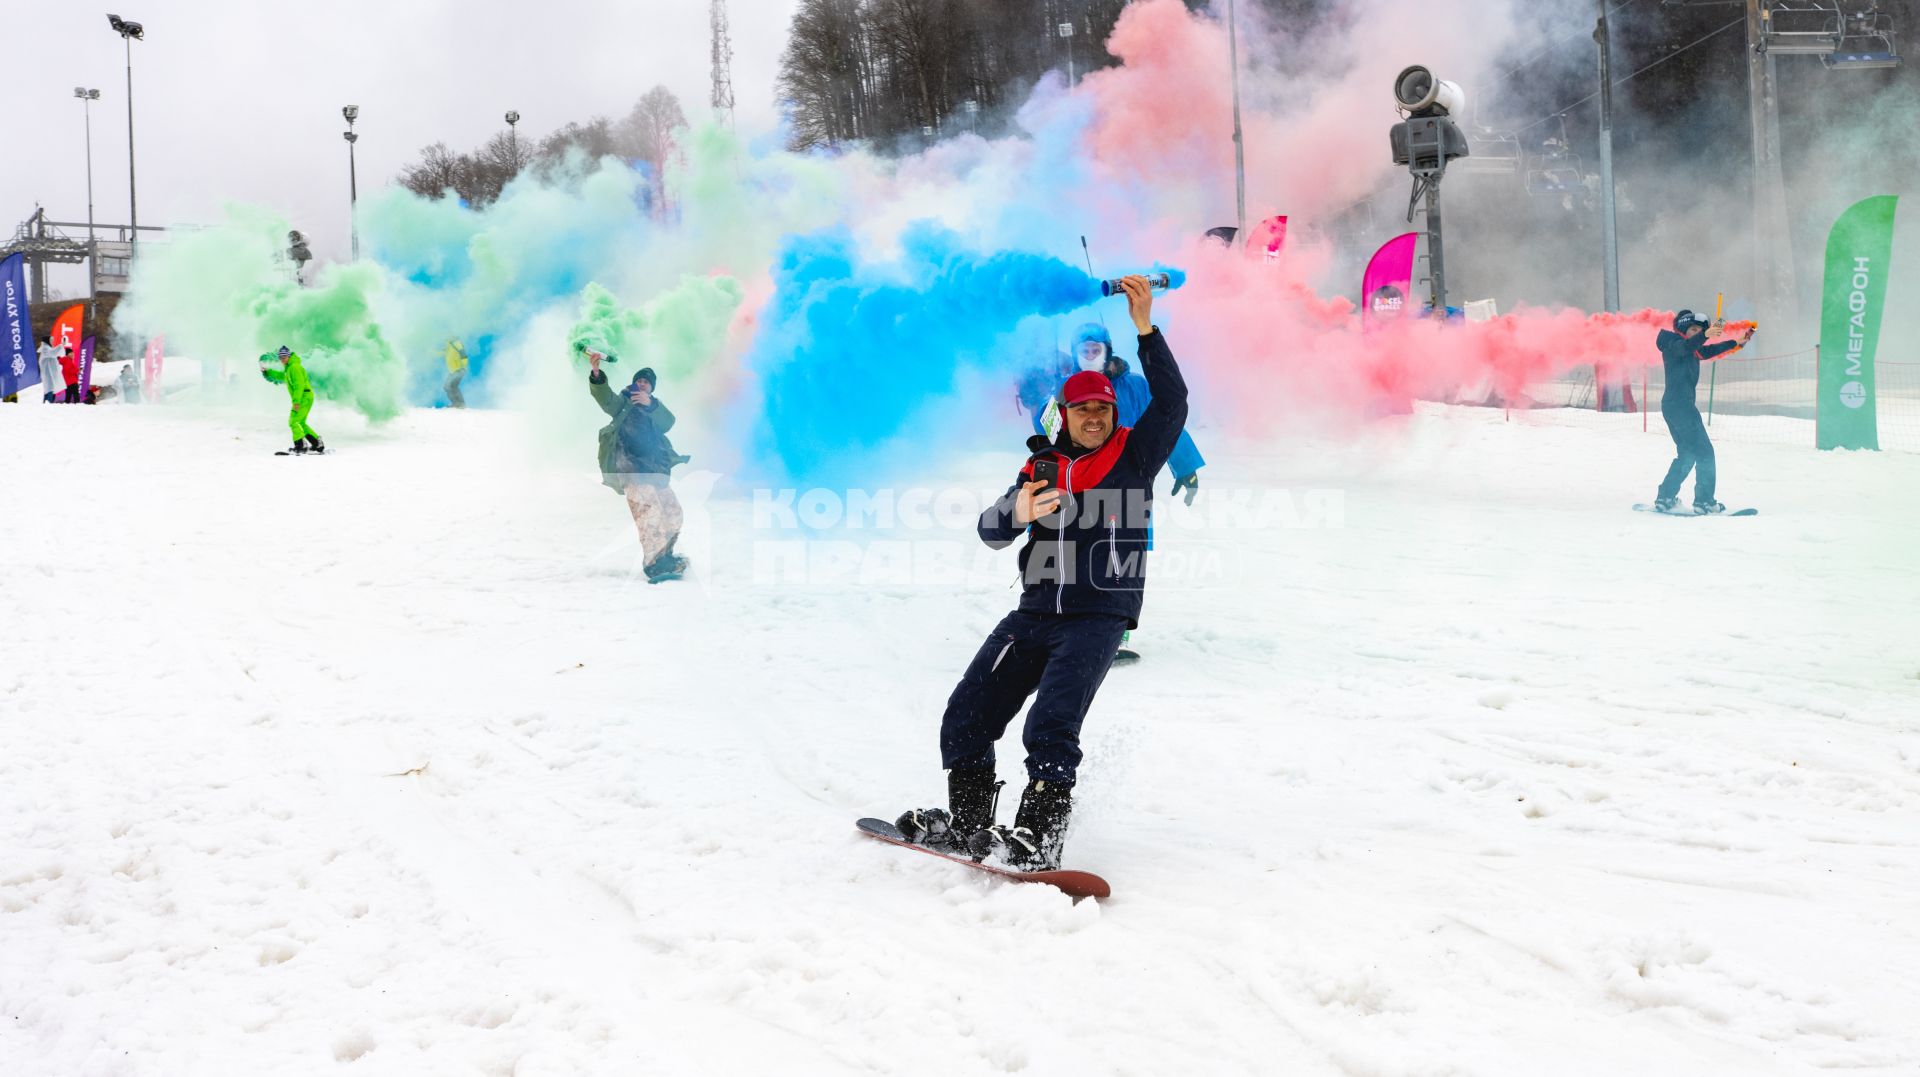 Сочи. Участники фестиваля BoogelWoogel с зажженными дымовыми шашками во время тематического спуска `Цветной дым` на Роза Хутор.